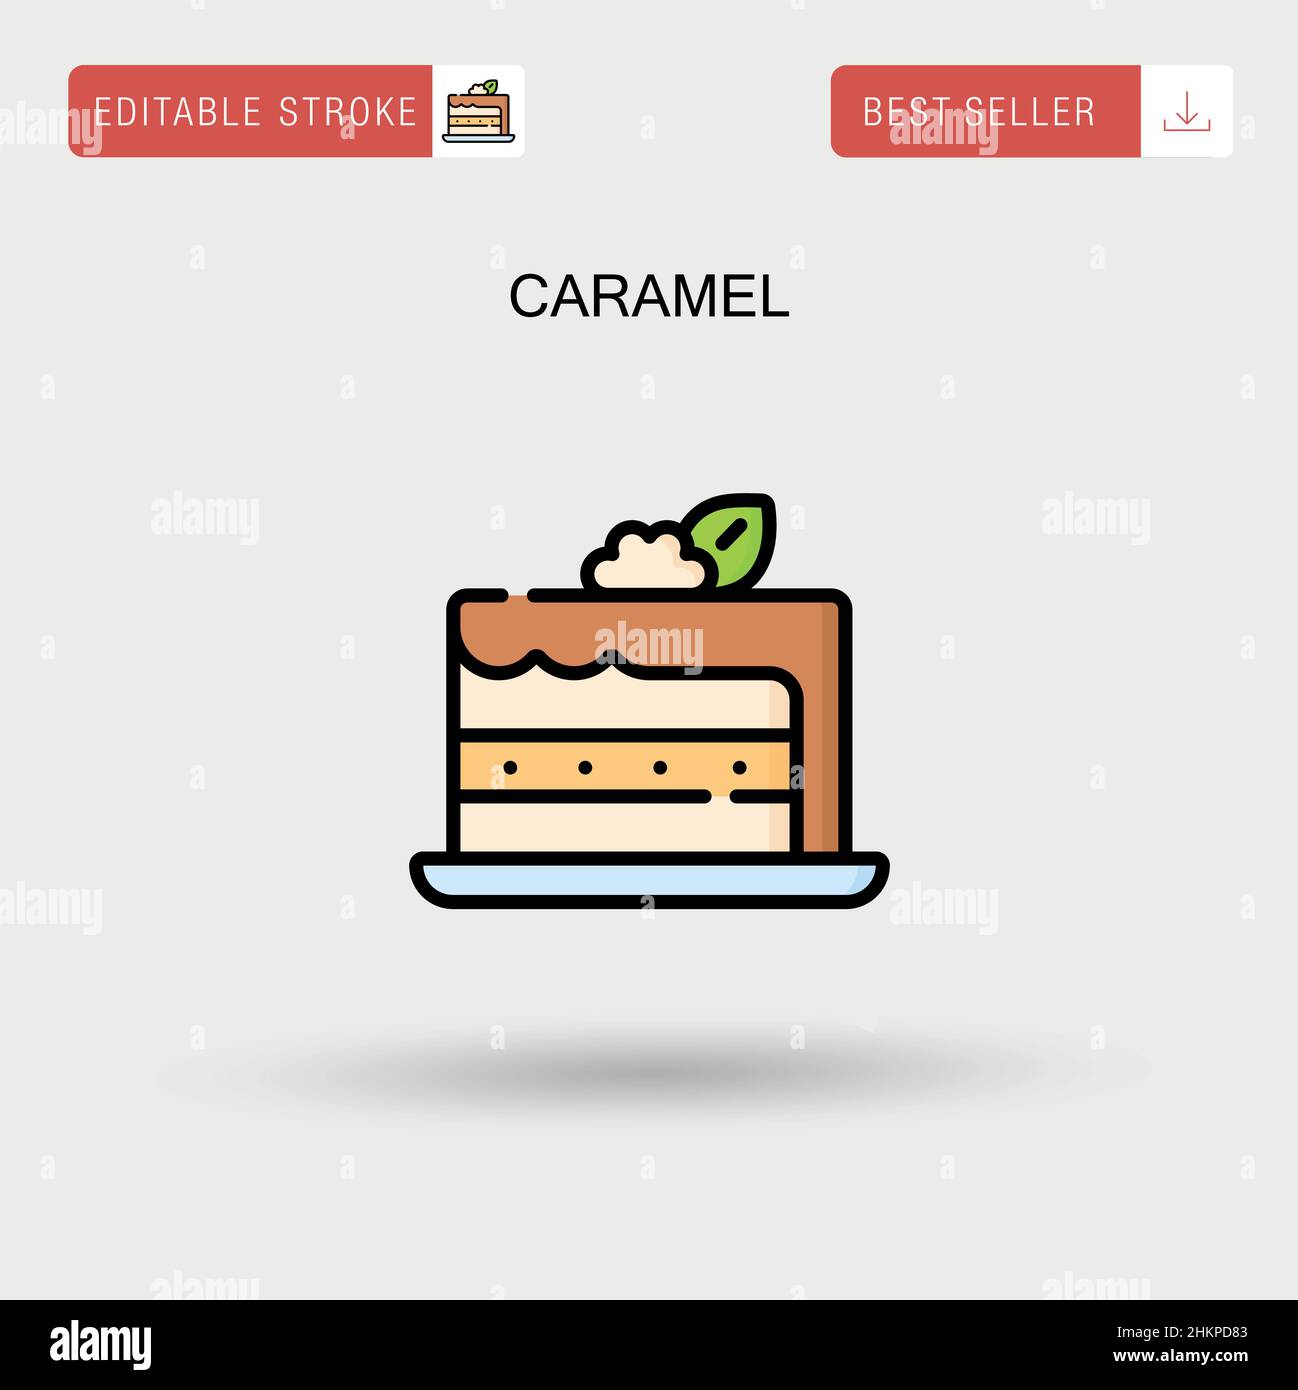 Caramel Simple vector icon. Stock Vector